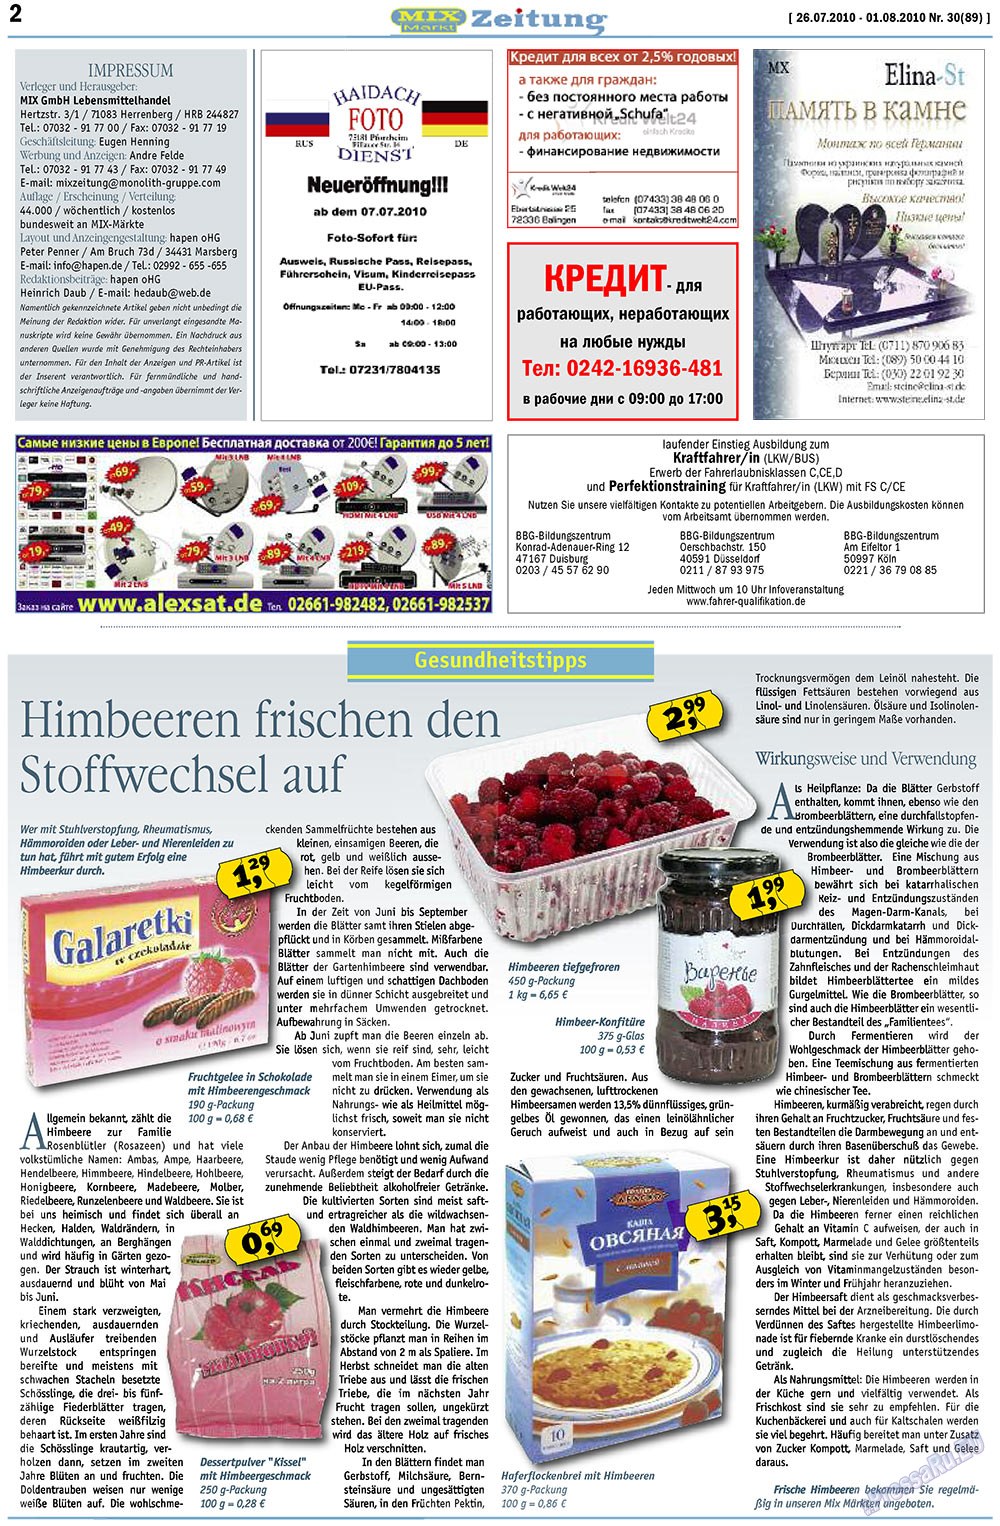 MIX-Markt Zeitung, газета. 2010 №30 стр.2